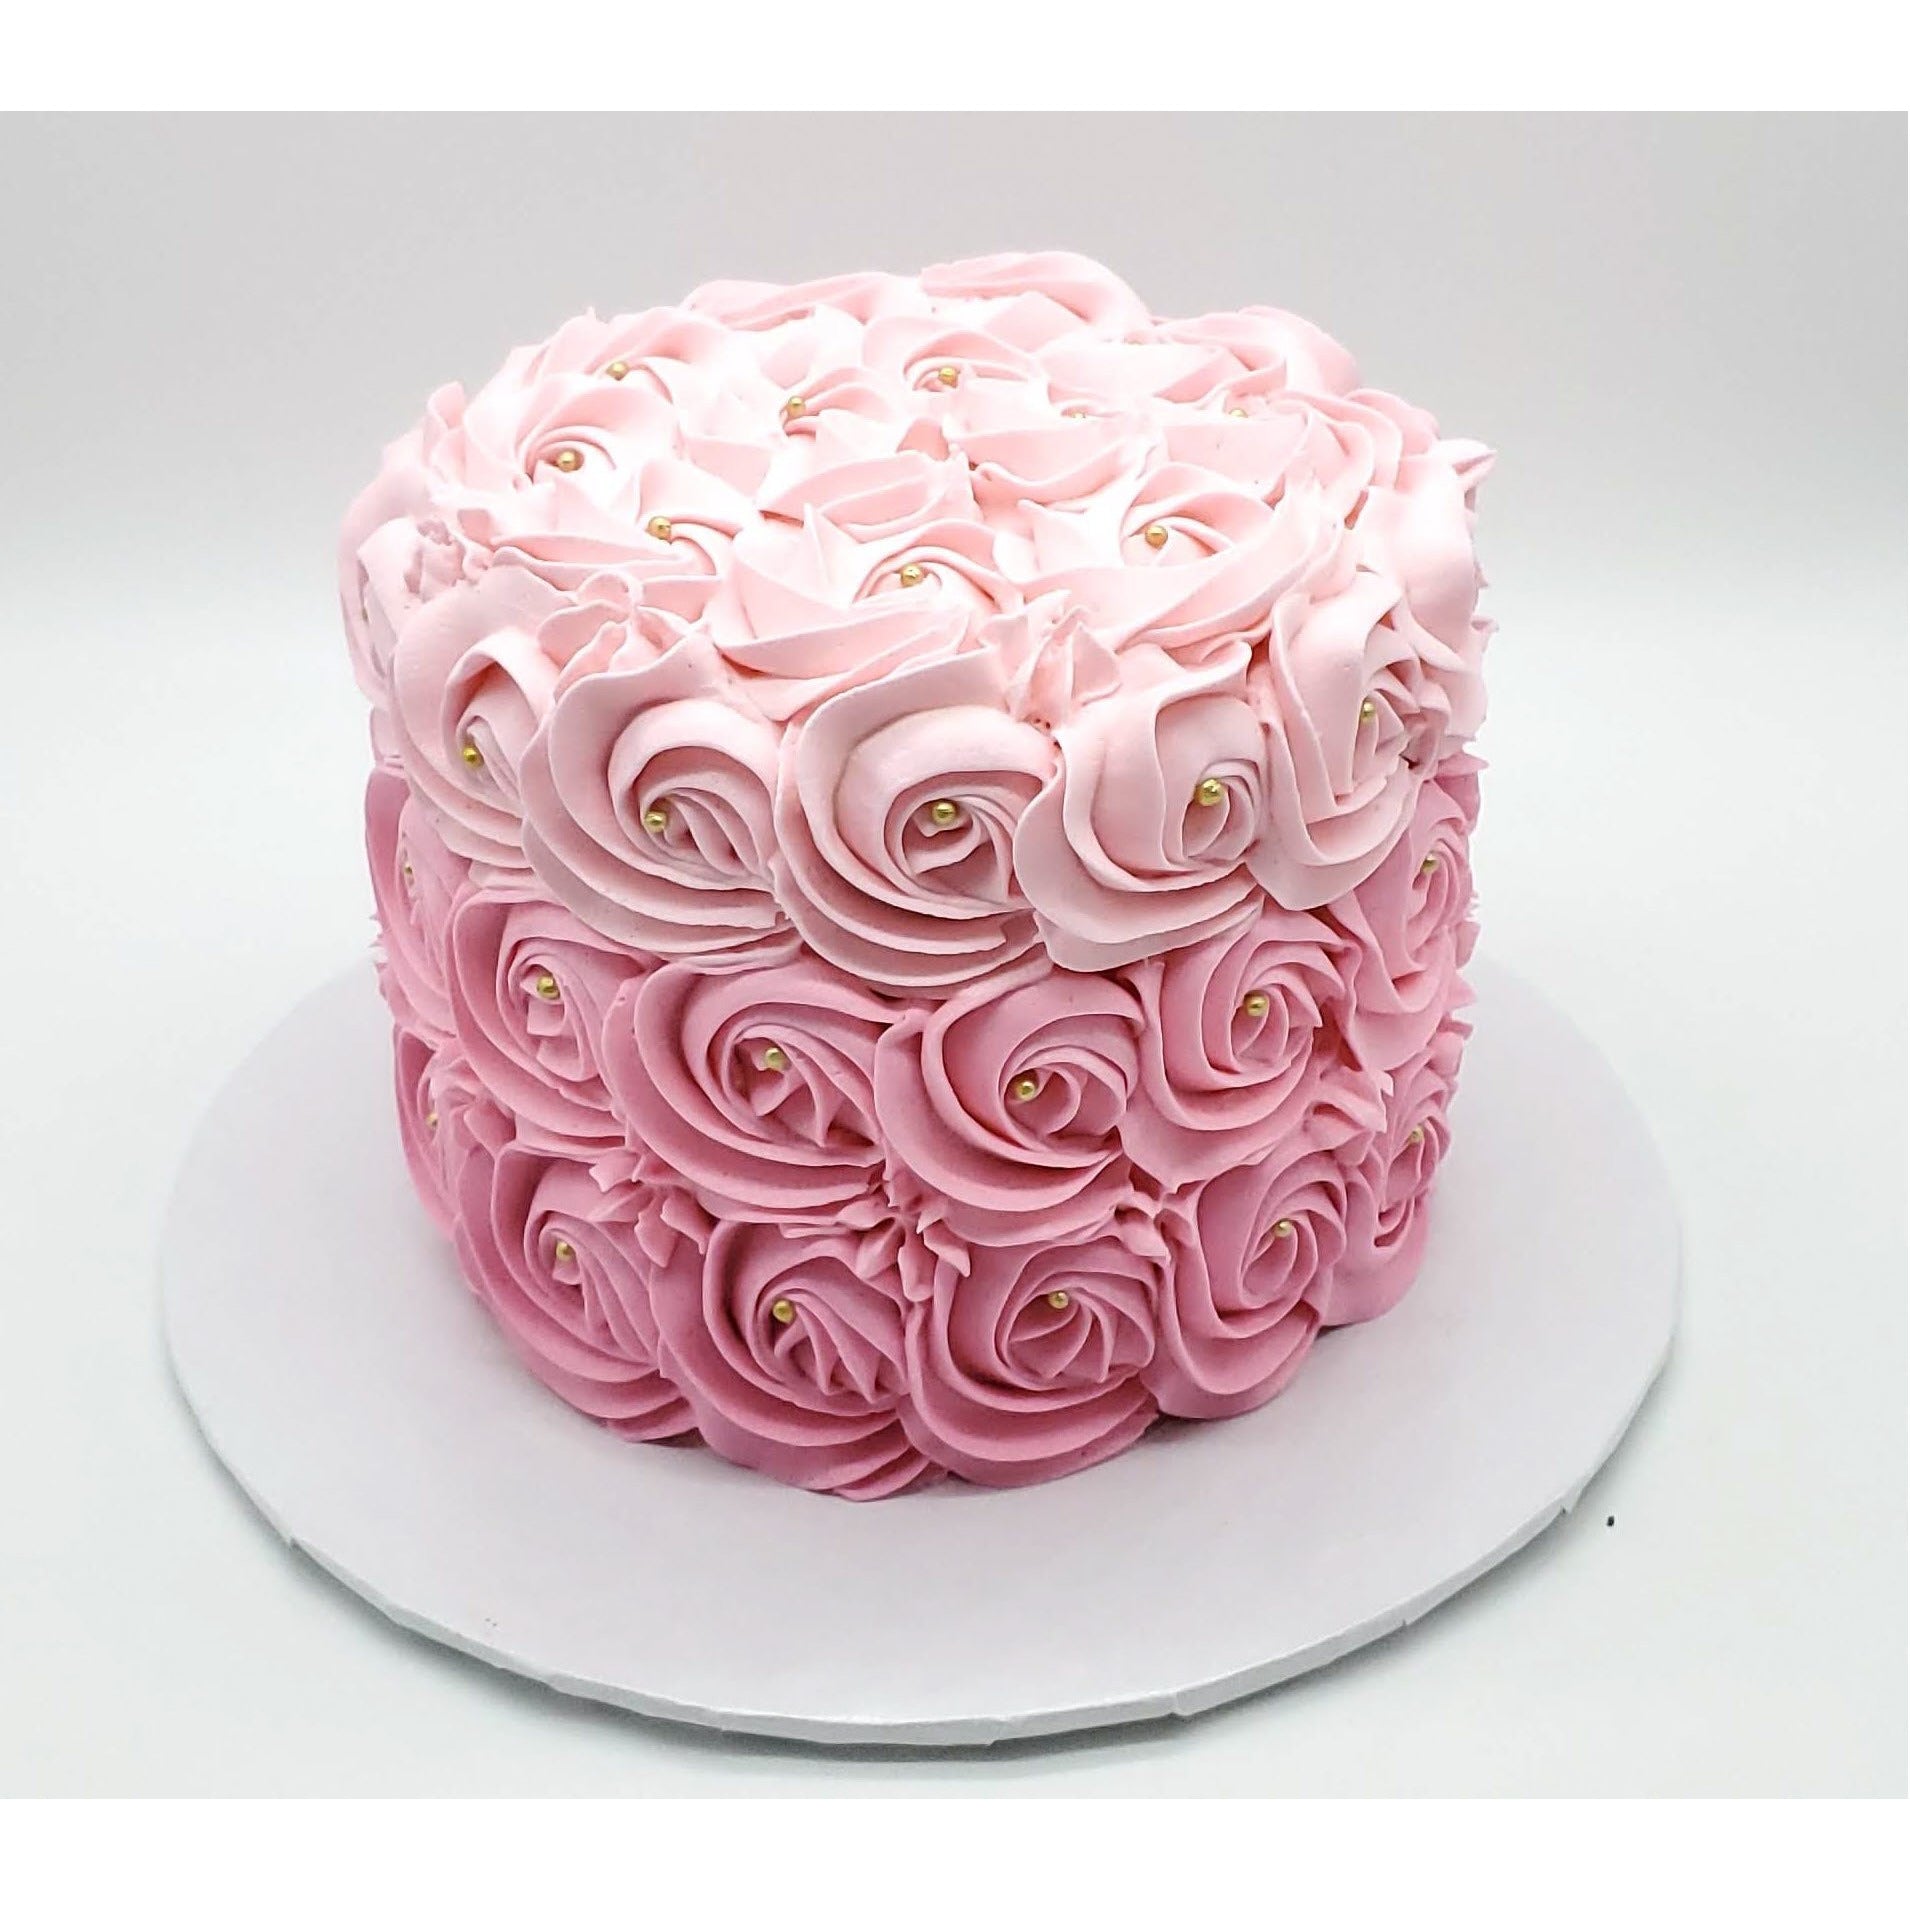 Rosette Cake - Auckland